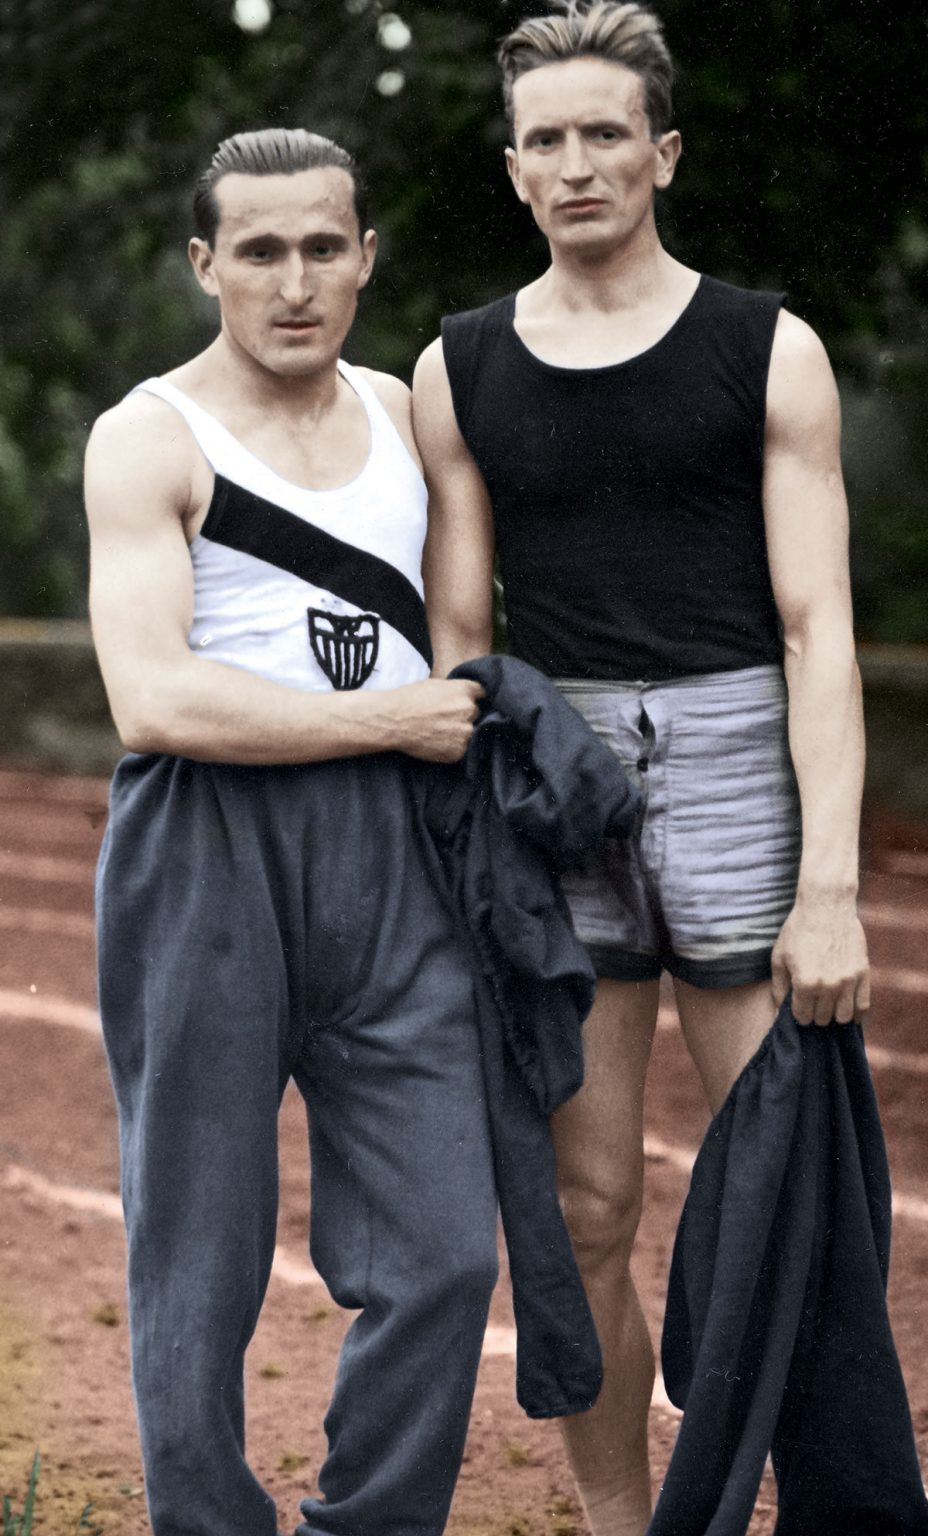 Janusz Kusociński i Stefan Kostrzewski w czasie zawodów lekkoatletycznych w Warszawie, sierpień 1931 r. Źródło: Narodowe Archiwum Cyfrowe